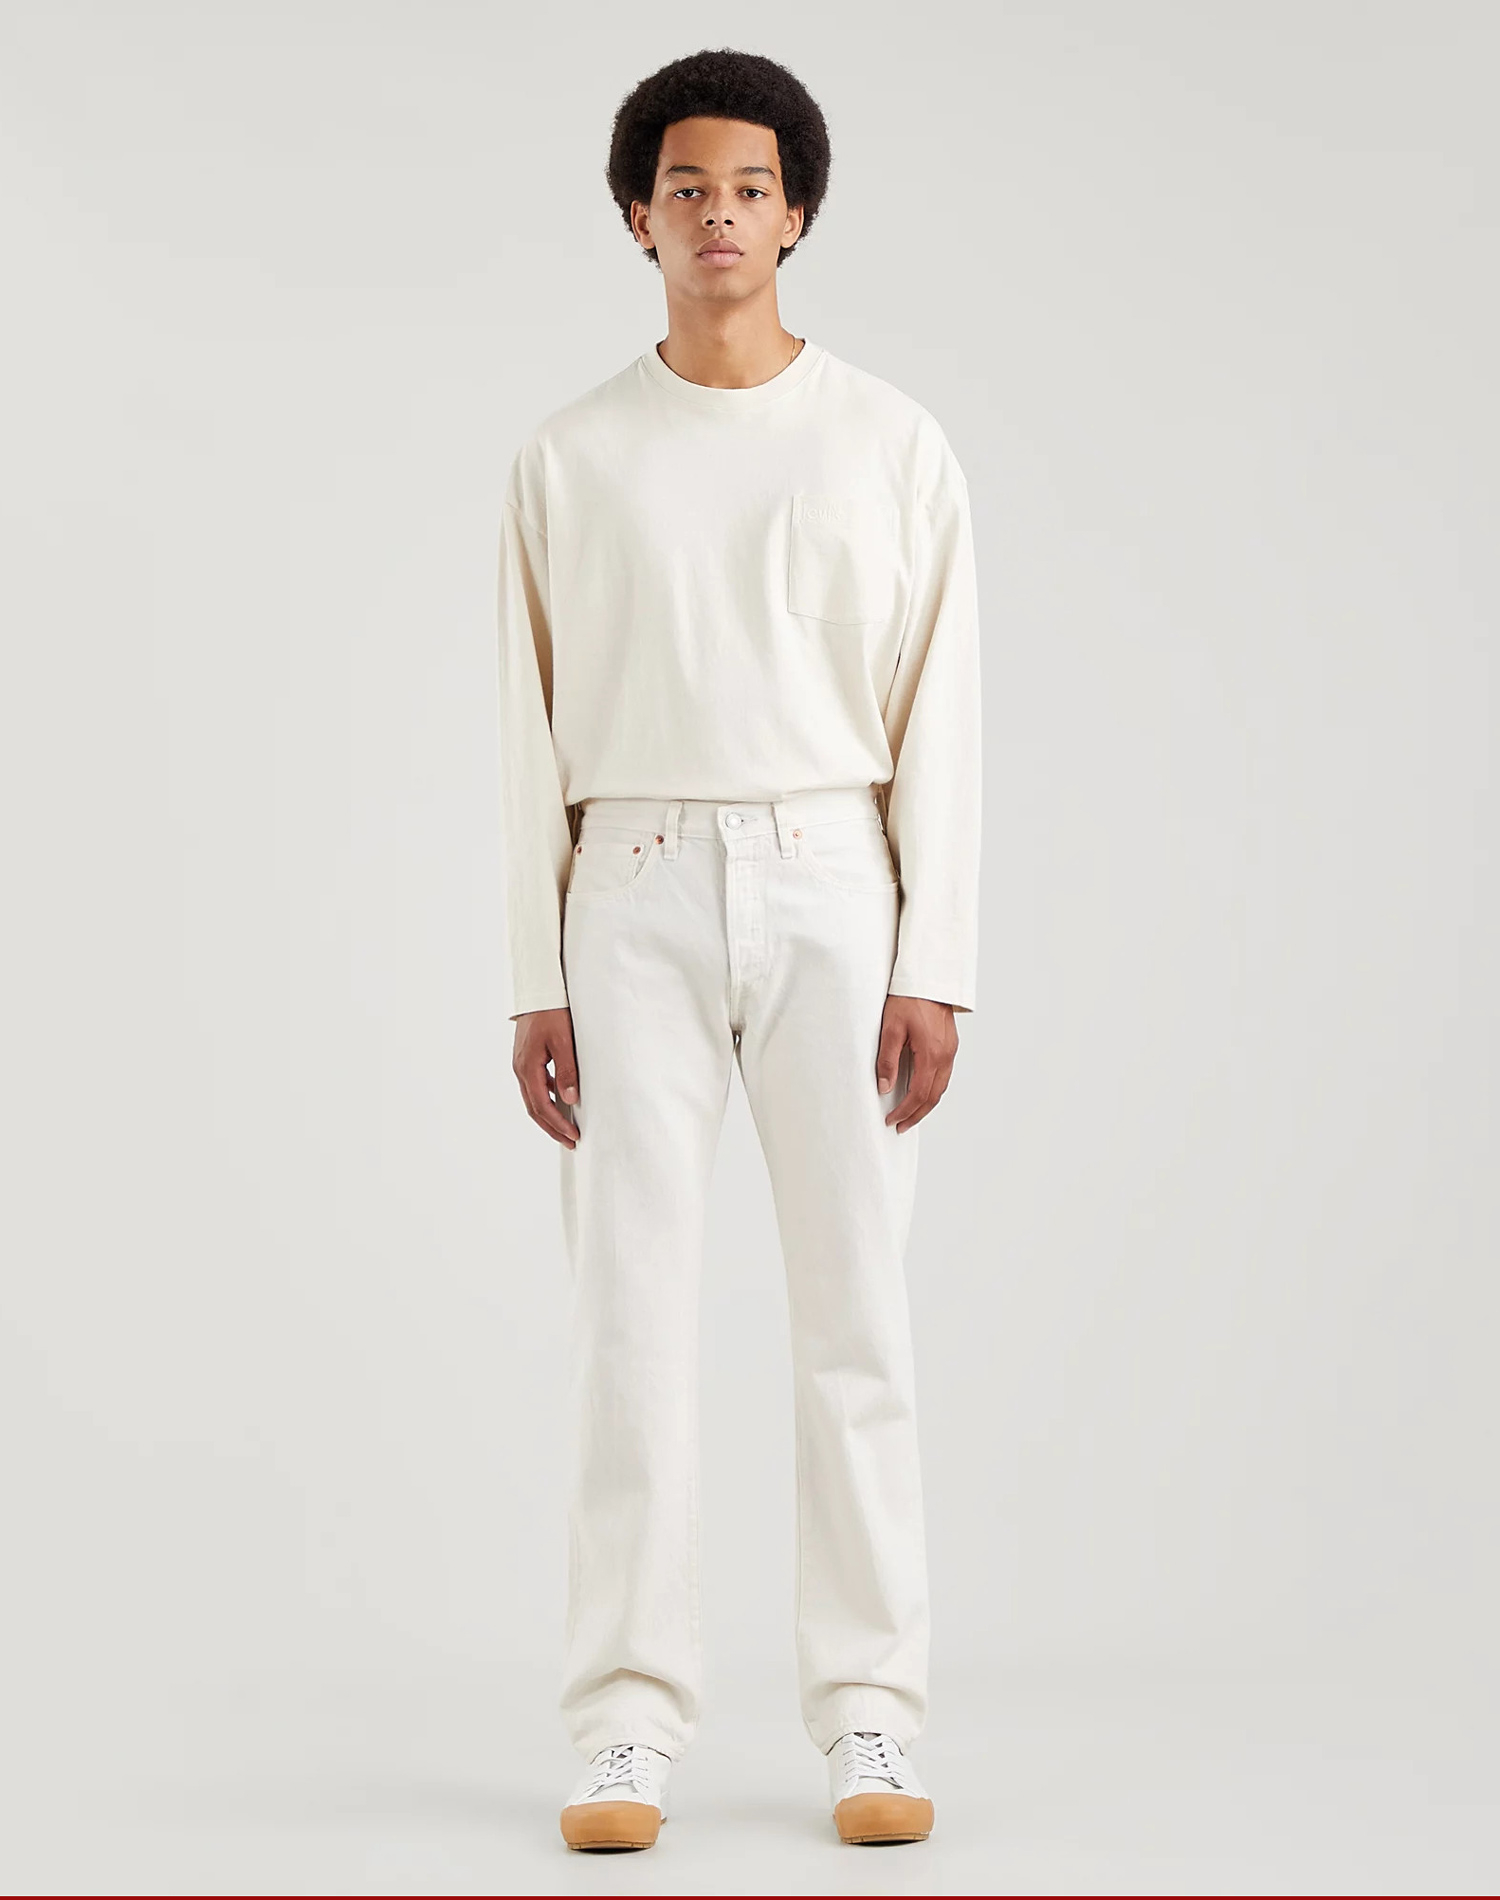 Levi’s® 501® regular pantalons texans d'home 00501-3279 blancs